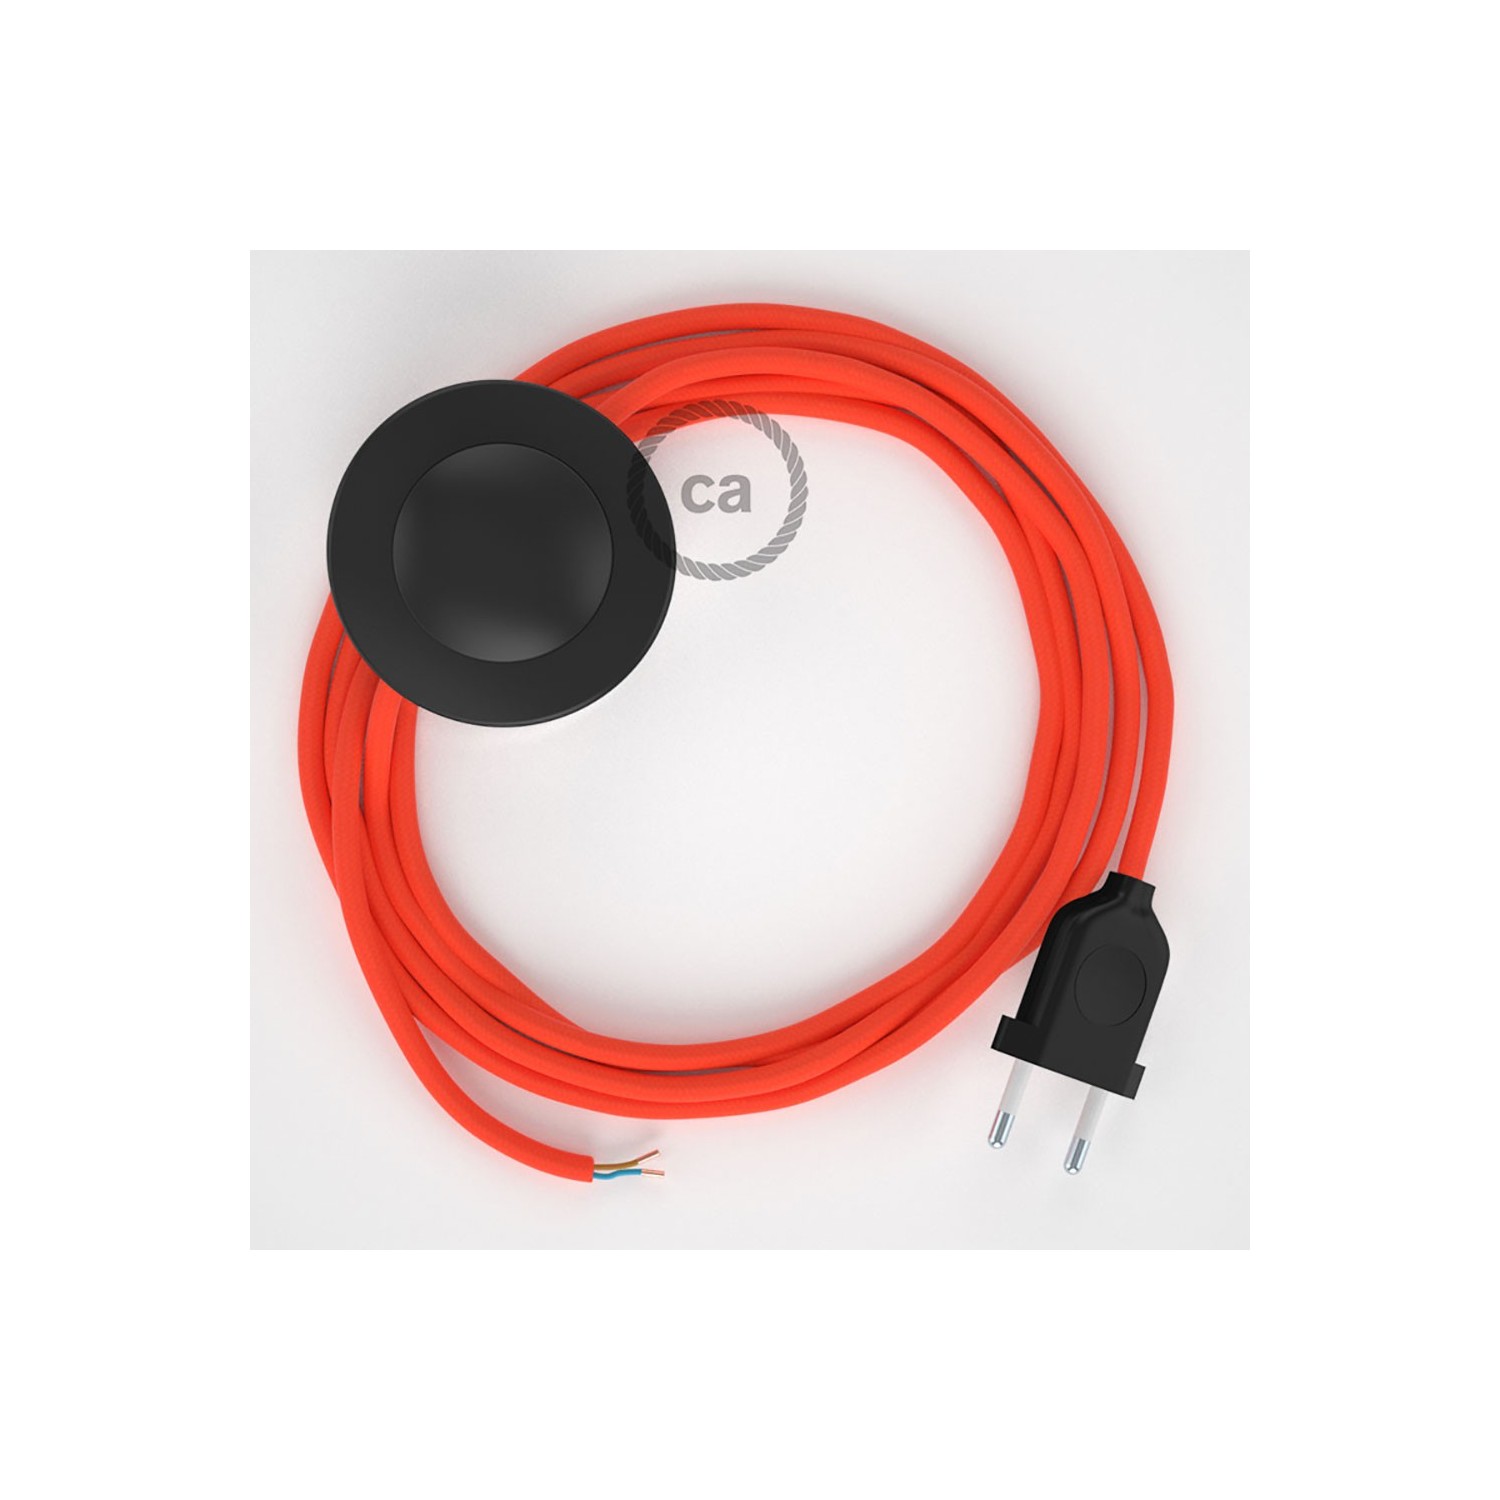 Cableado para lámpara de pie, cable RF15 Efecto Seda Naranja Flùo 3 m. Elige tu el color de la clavija y del interruptor!